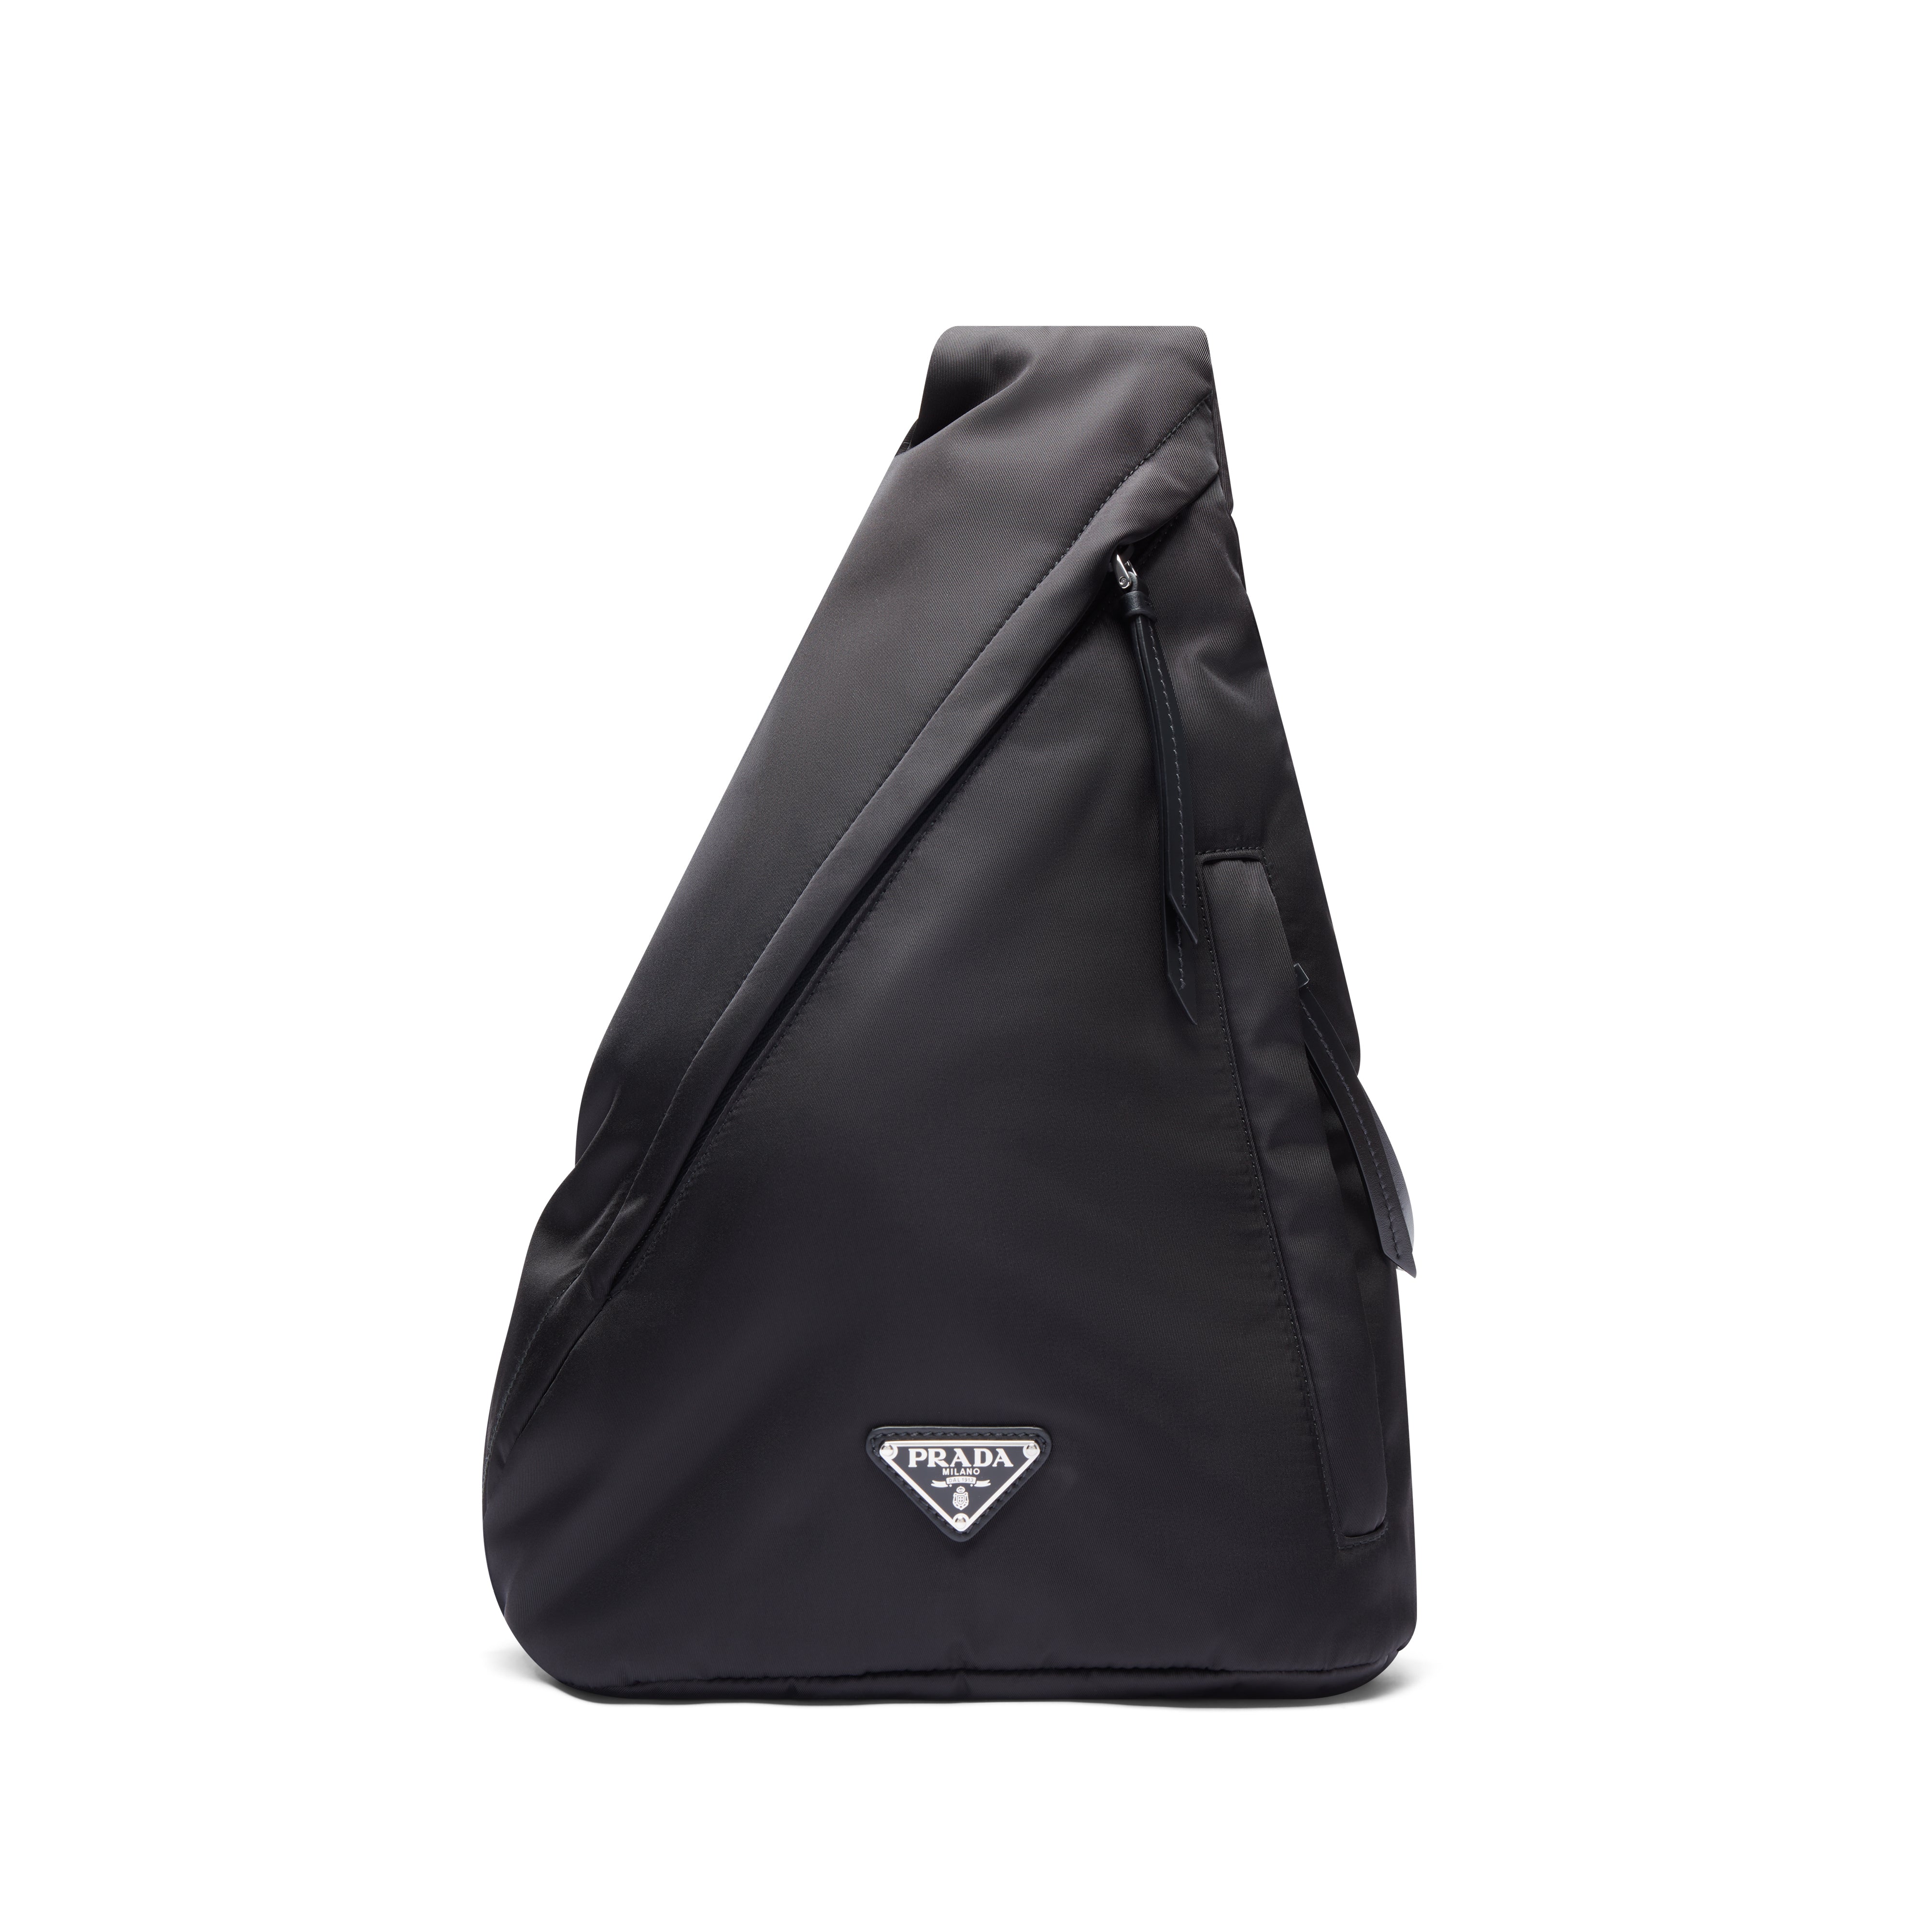 Prada - Men's Re-Nylon and Leather Backpack - (Black) – DSMNY E